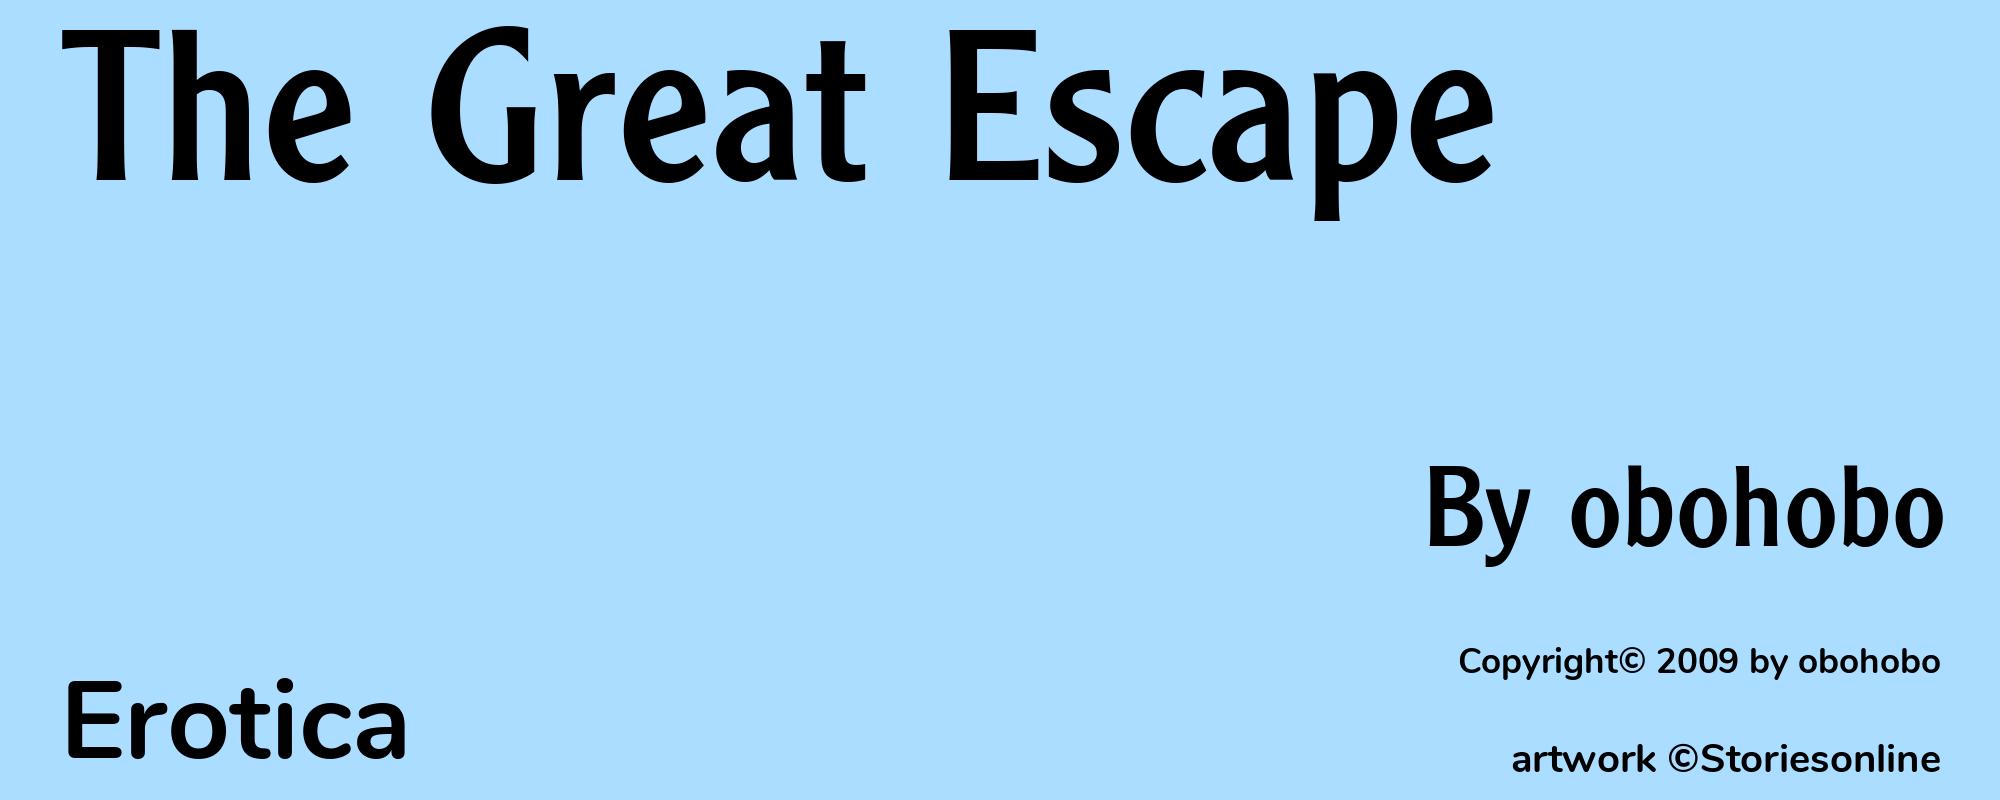 The Great Escape - Cover